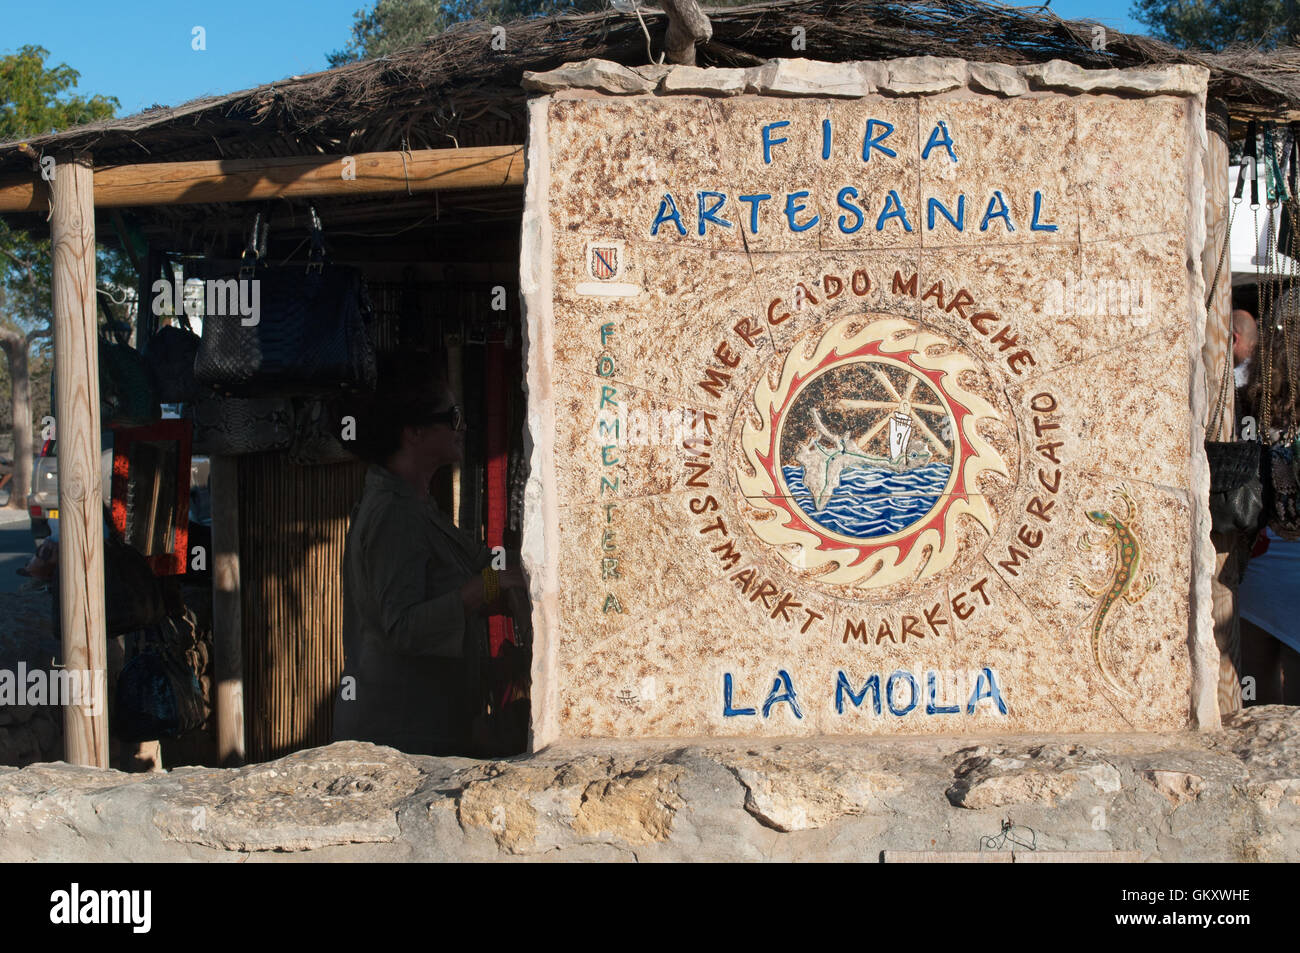 Formentera, Formentera, Espagne : le signe de la Foire de La Mola, le plus célèbre marché d'art et d'artisanat sur l'île de Juin à Octobre Banque D'Images